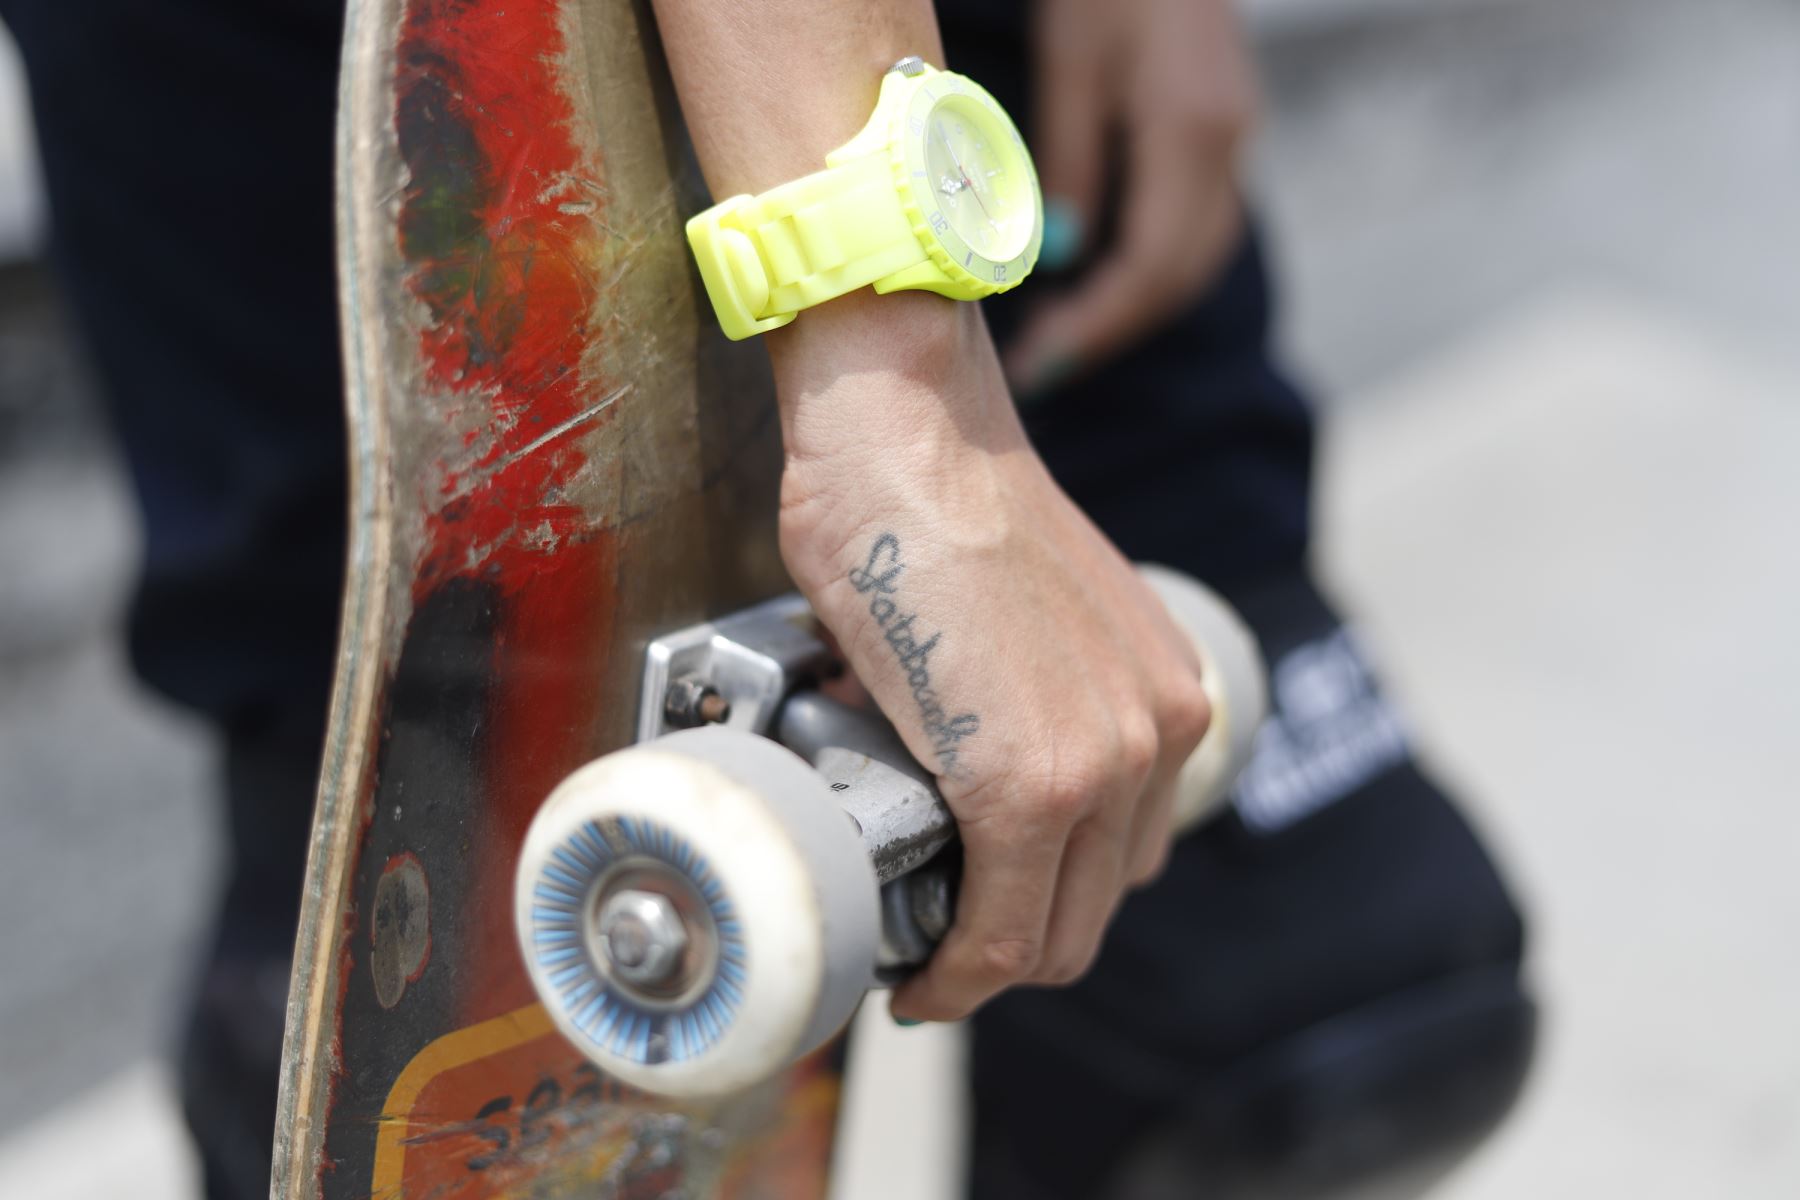 Una integrante del colectivo lleva tatuado el deporte que tanto le apasiona. Foto: ANDINA/Renato Pajuelo